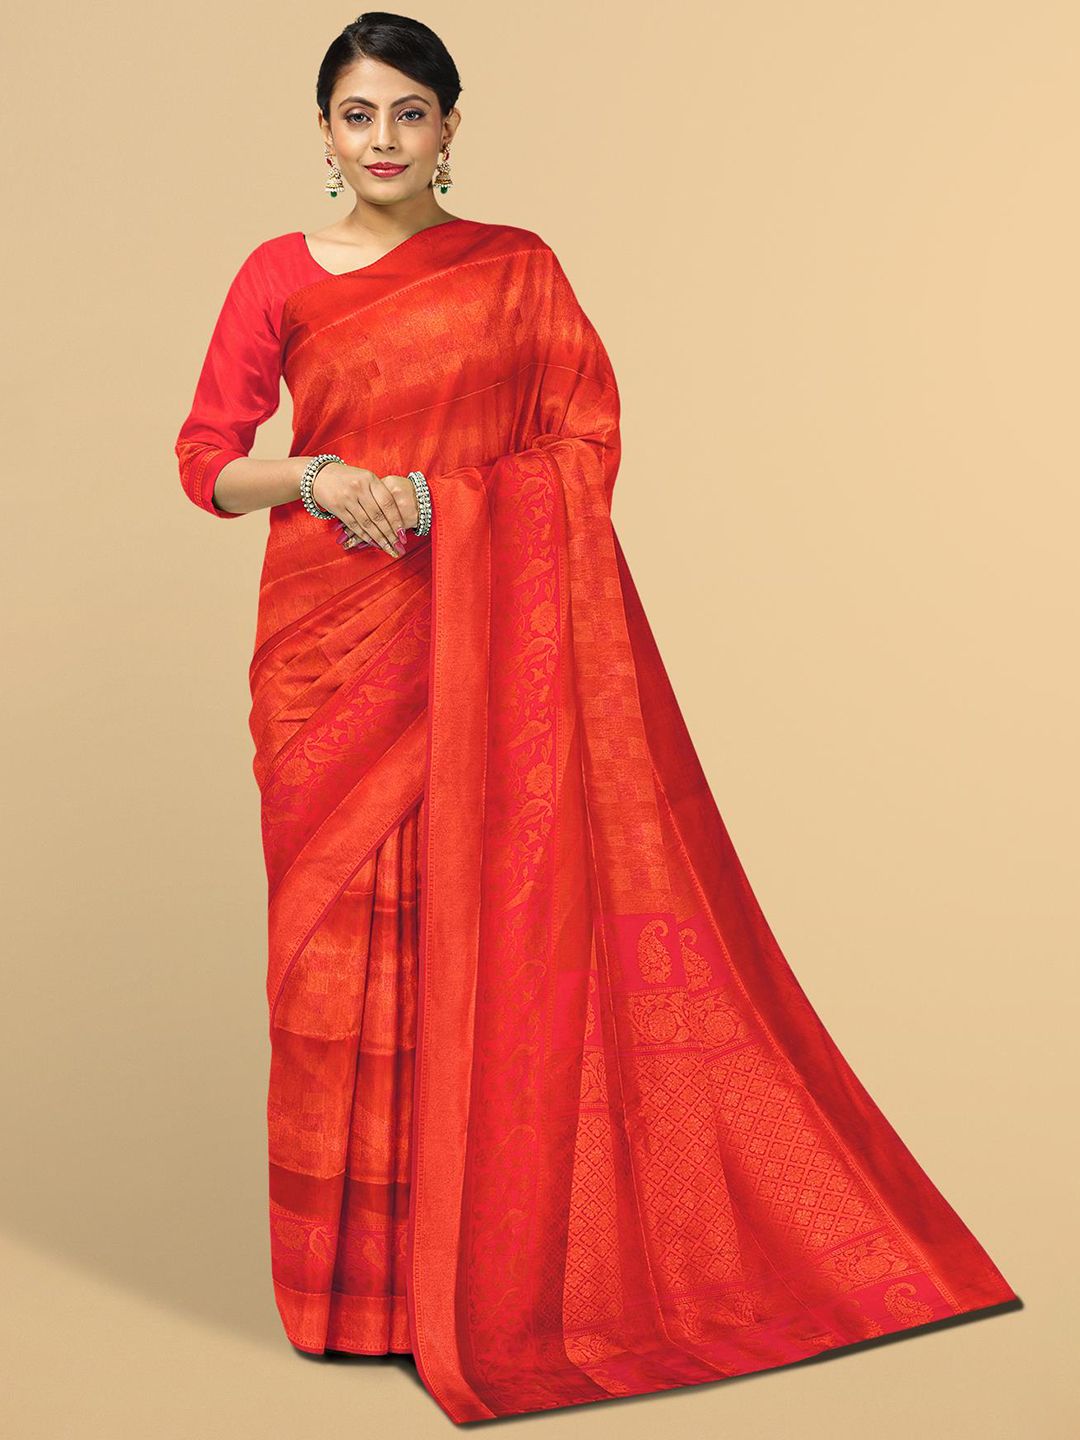 Kalamandir Red Floral Silk Blend Saree Price in India